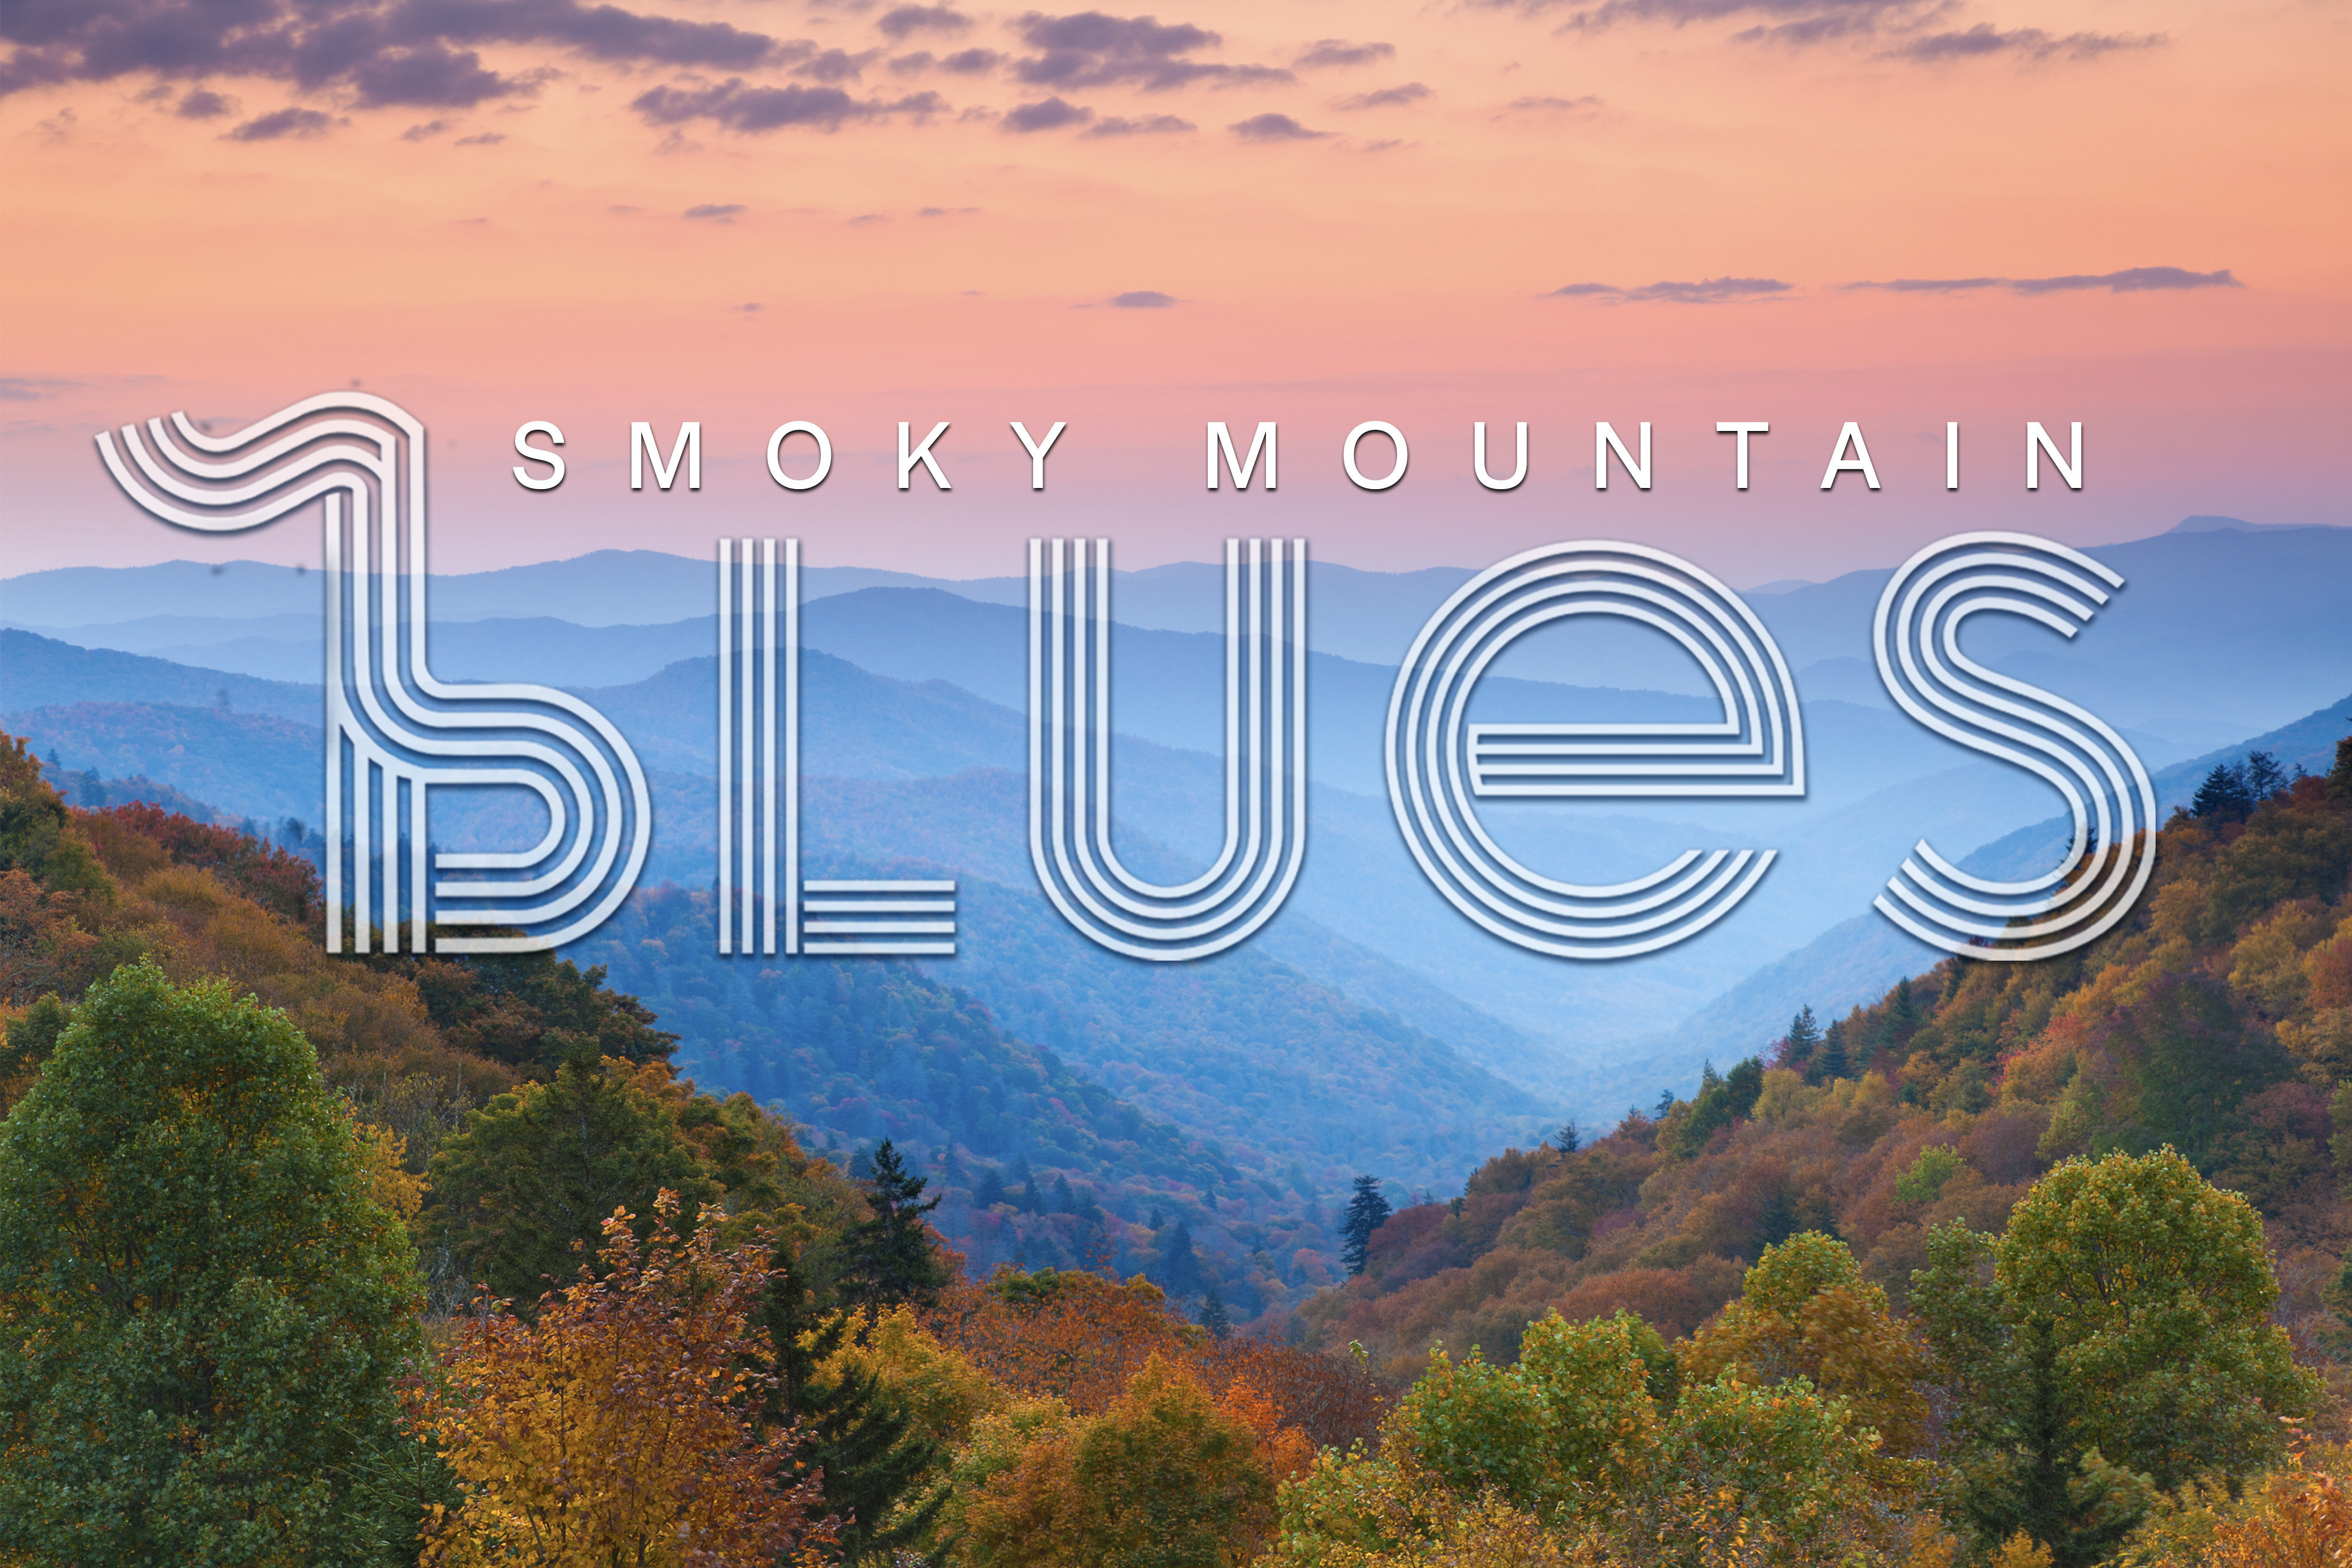 Smoky Mountain Blues | Westgate Sports & Entertainment